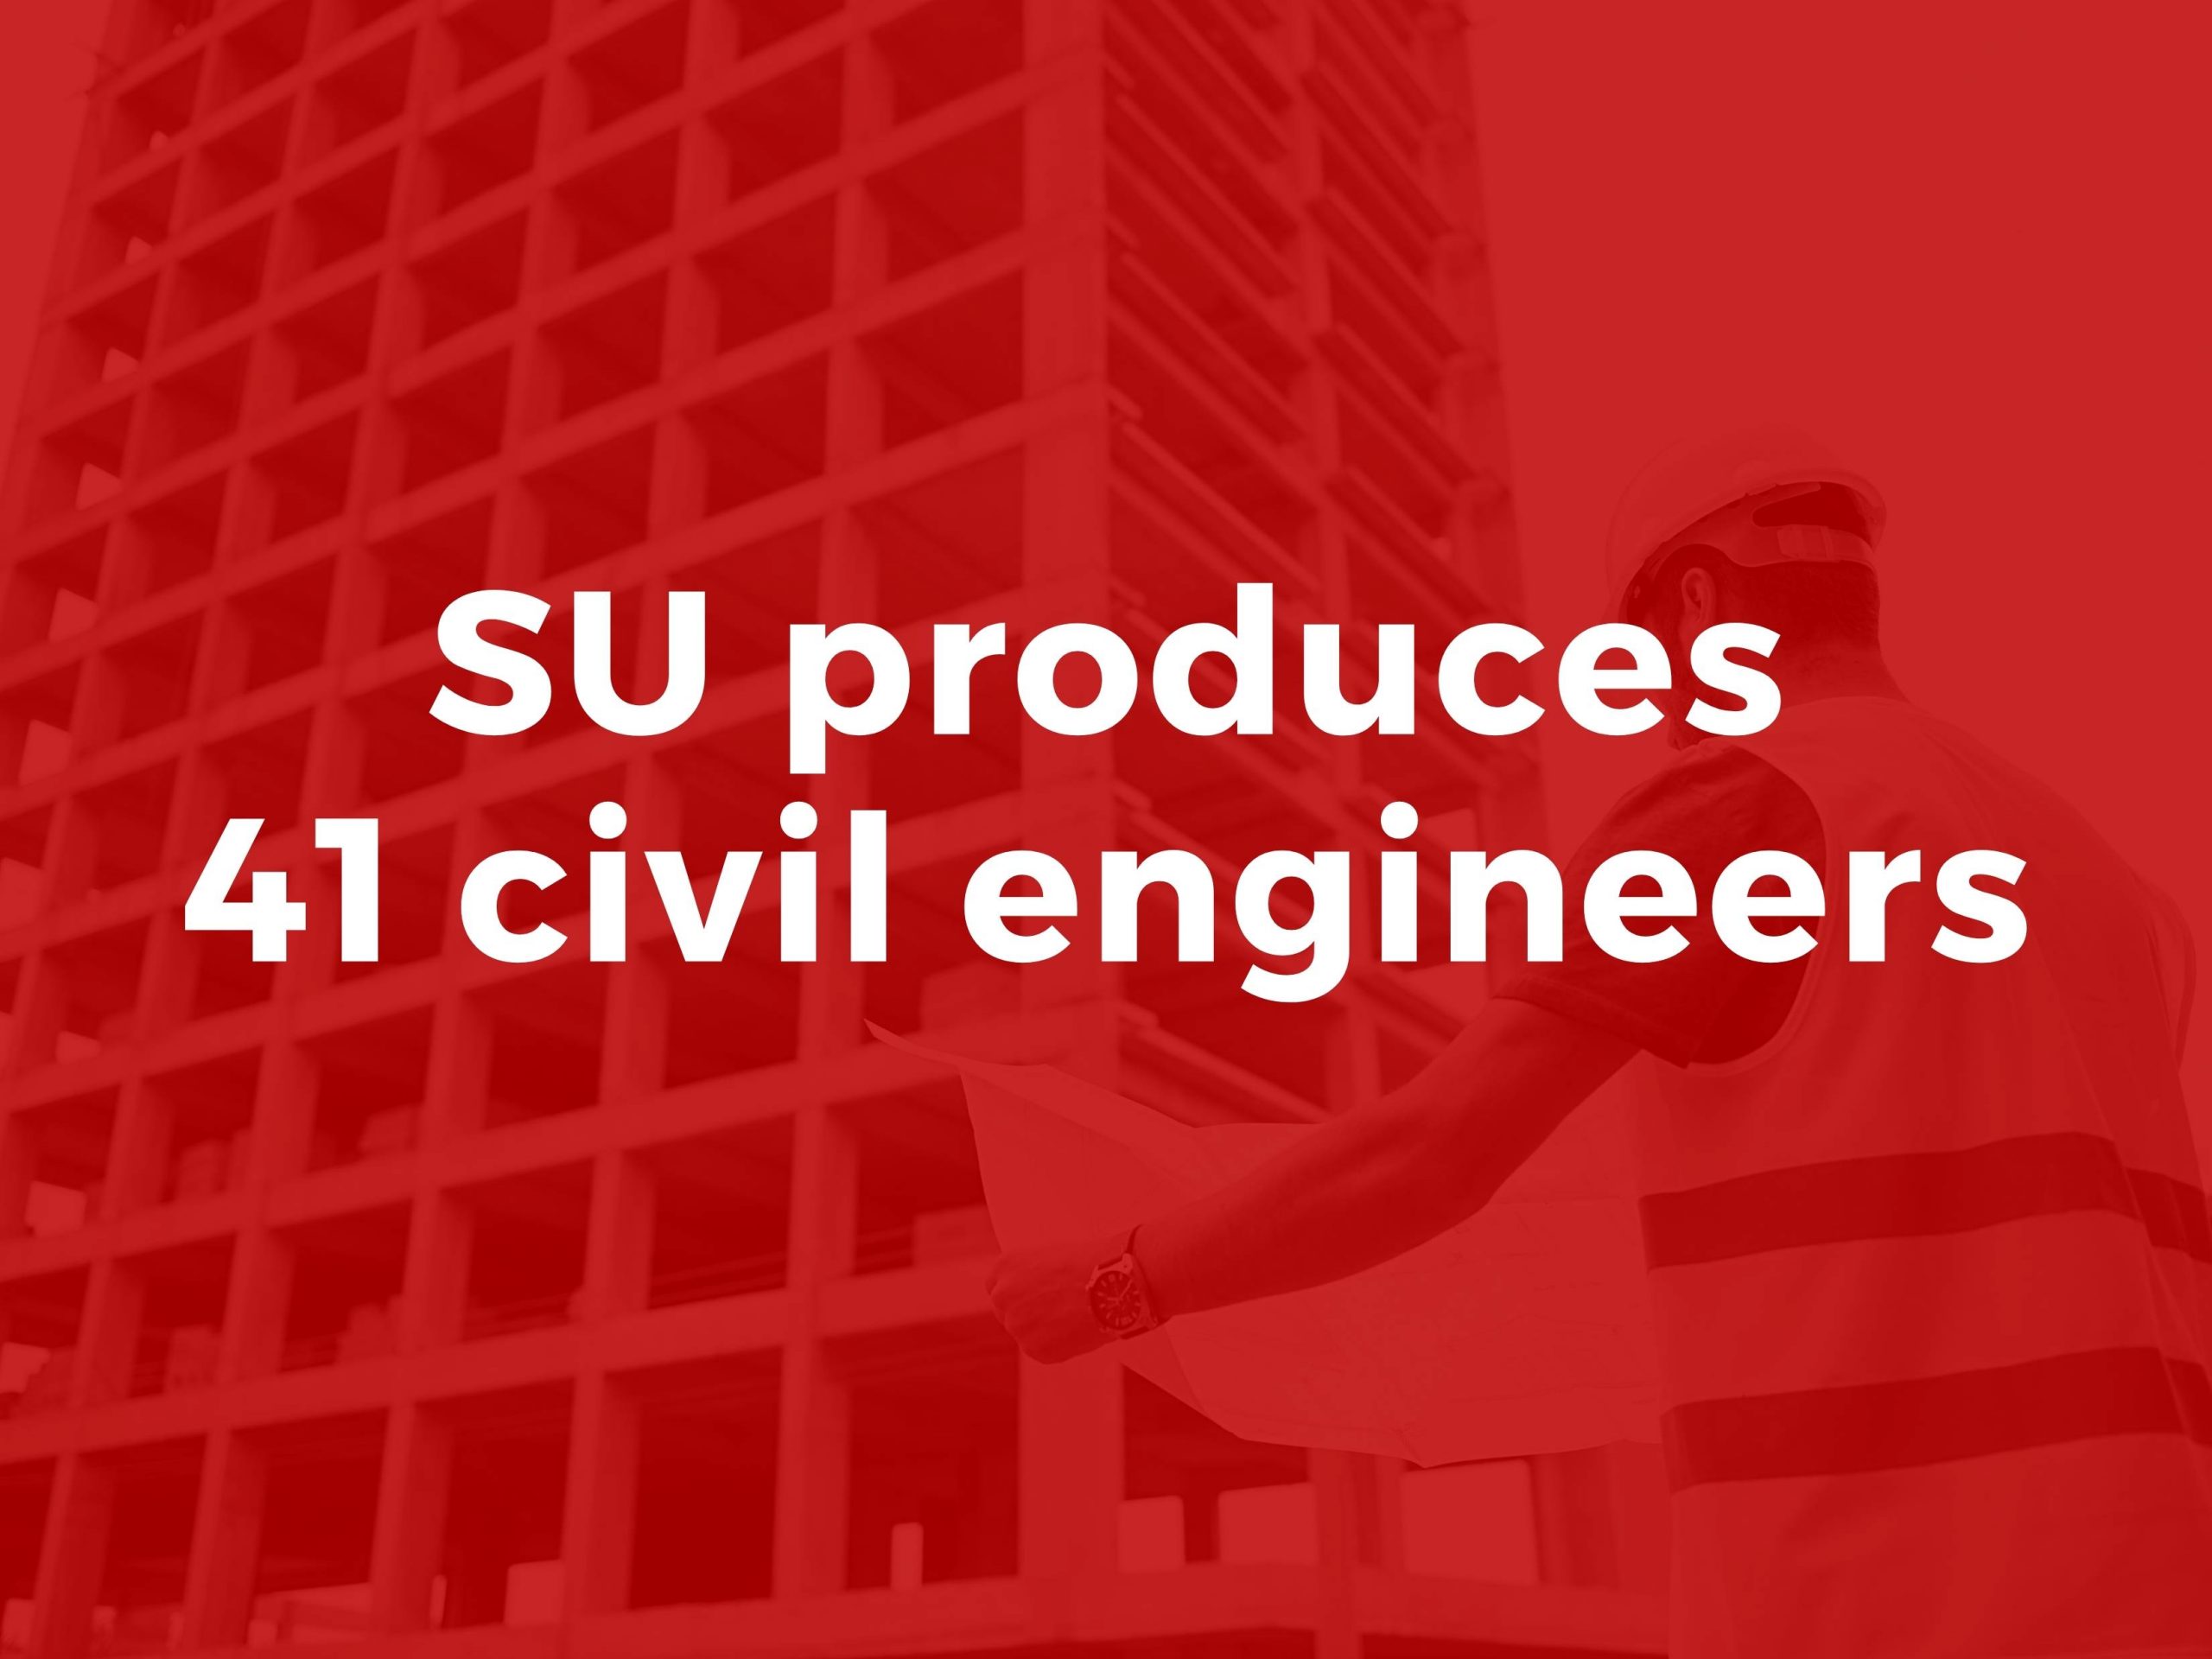 SU produces 41 civil engineers